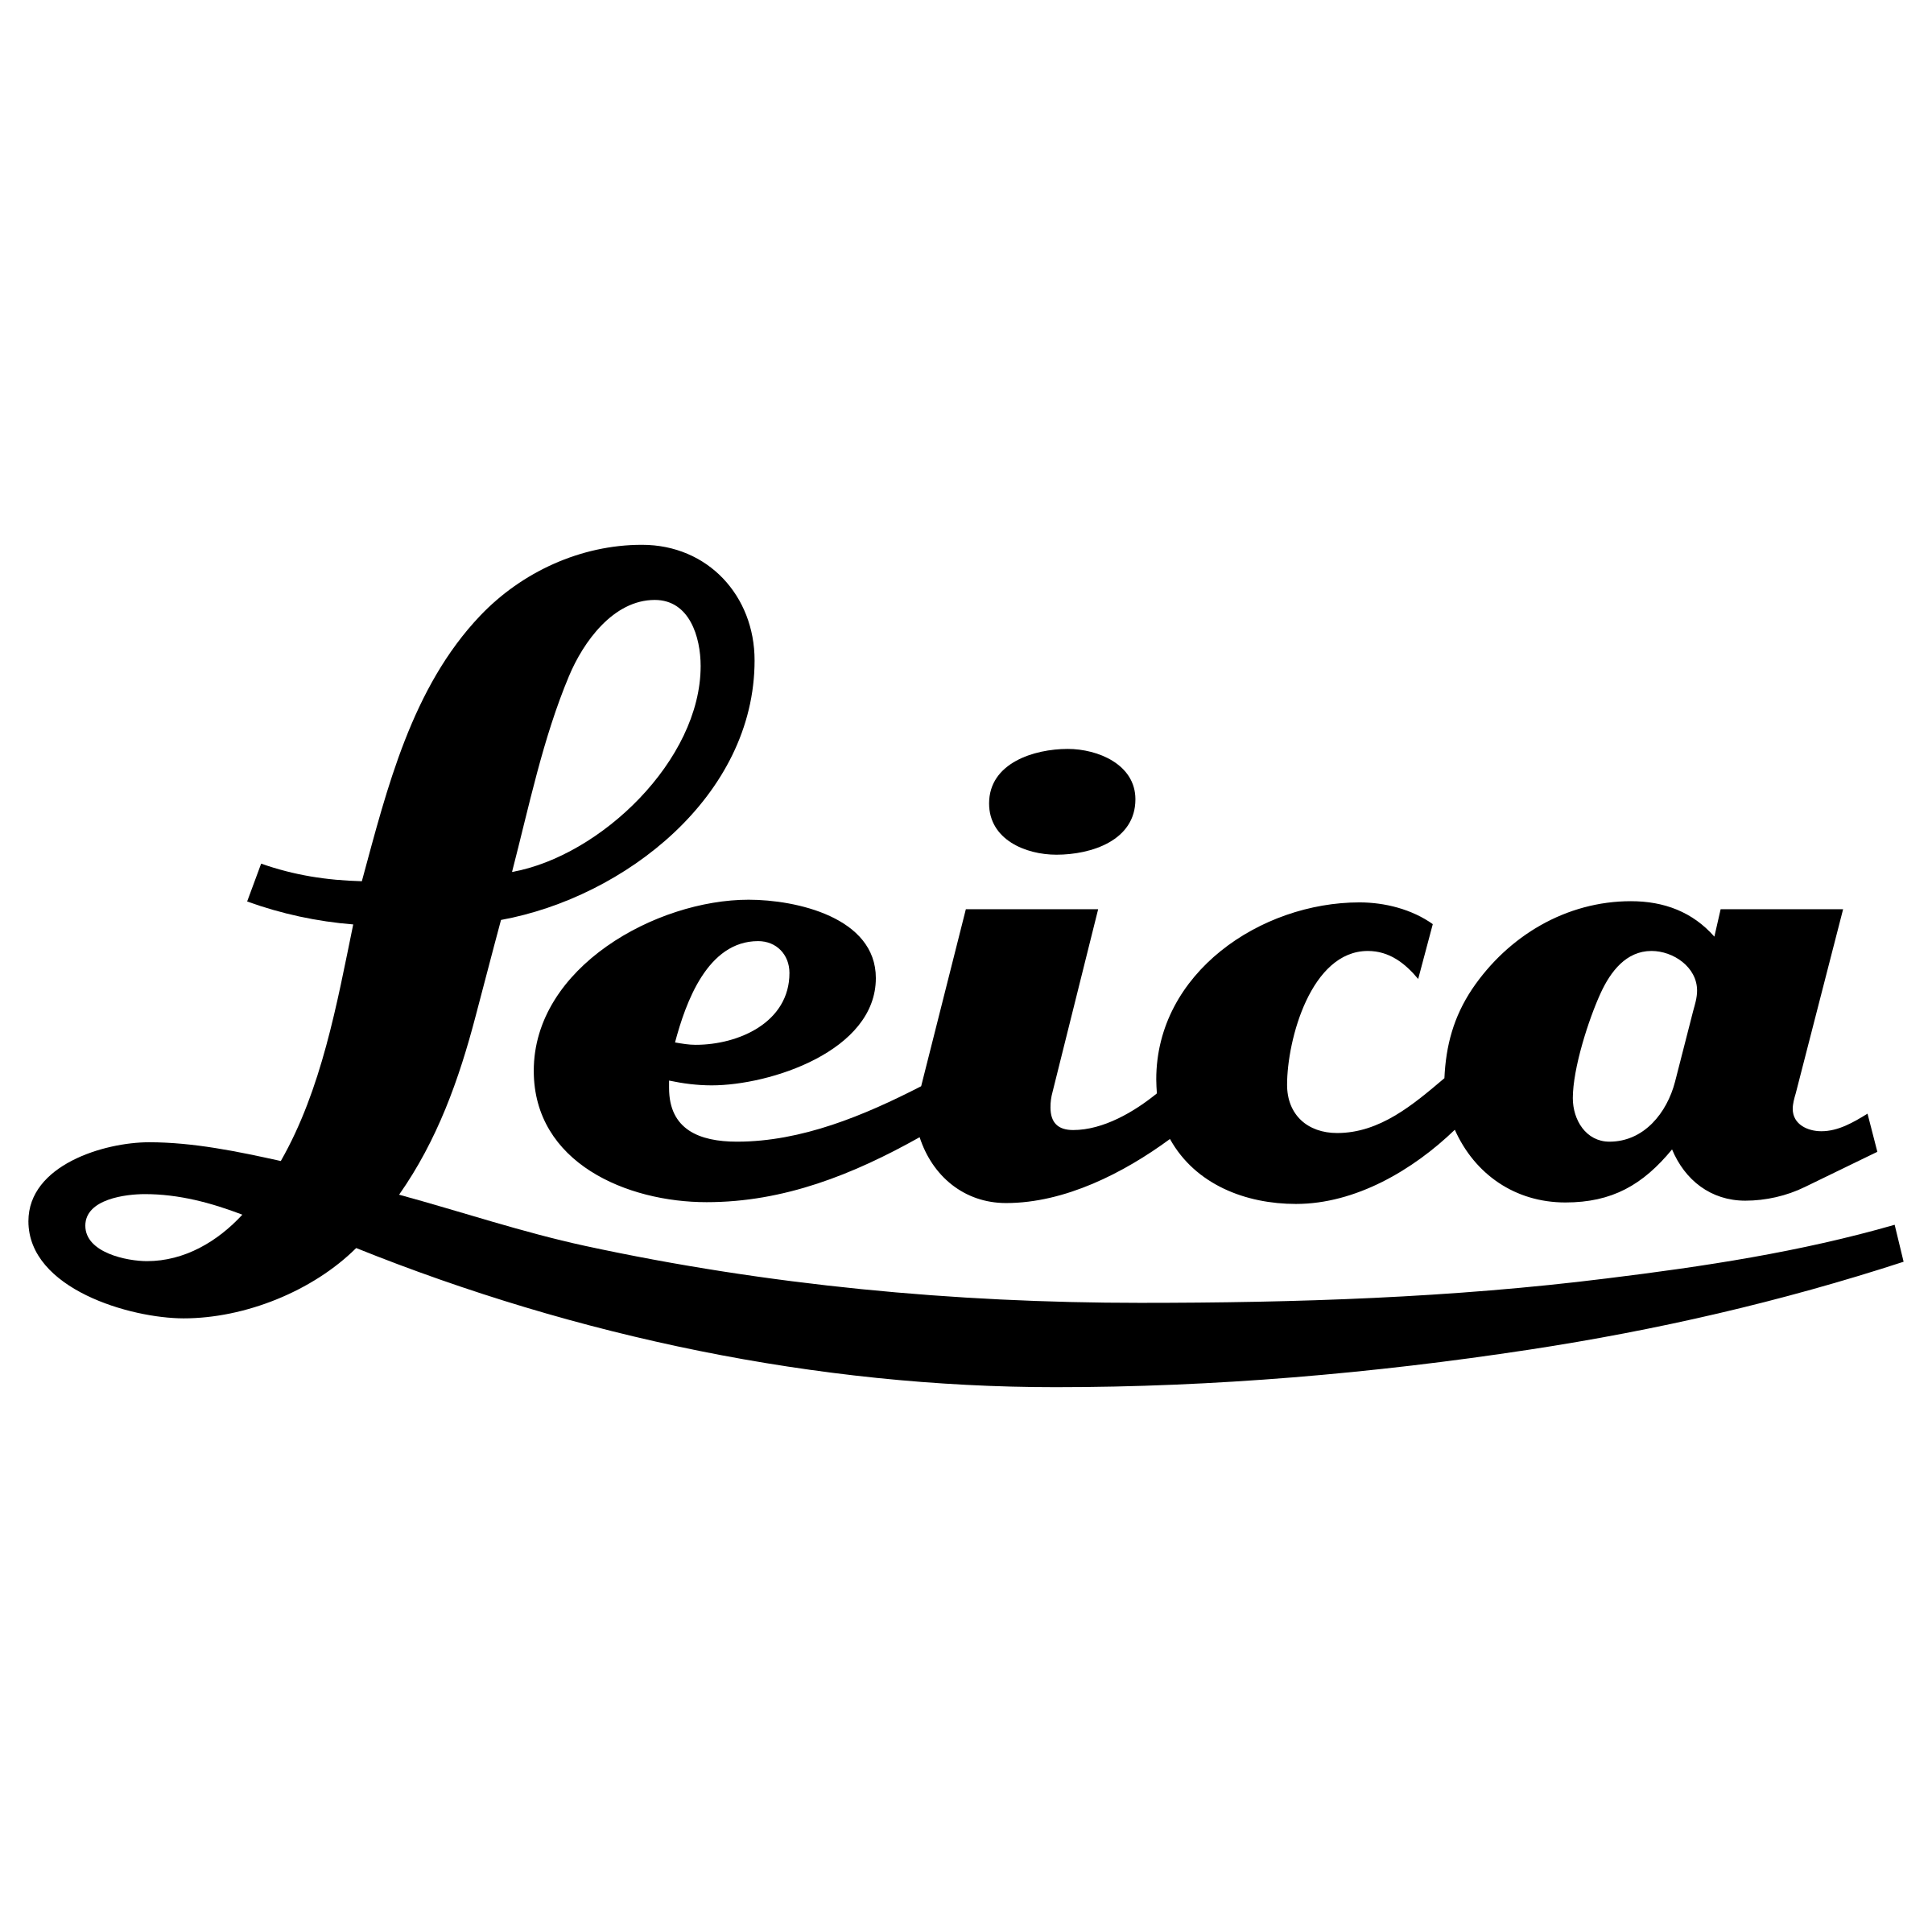 Leica Logo - Leica Logo PNG Transparent & SVG Vector - Freebie Supply